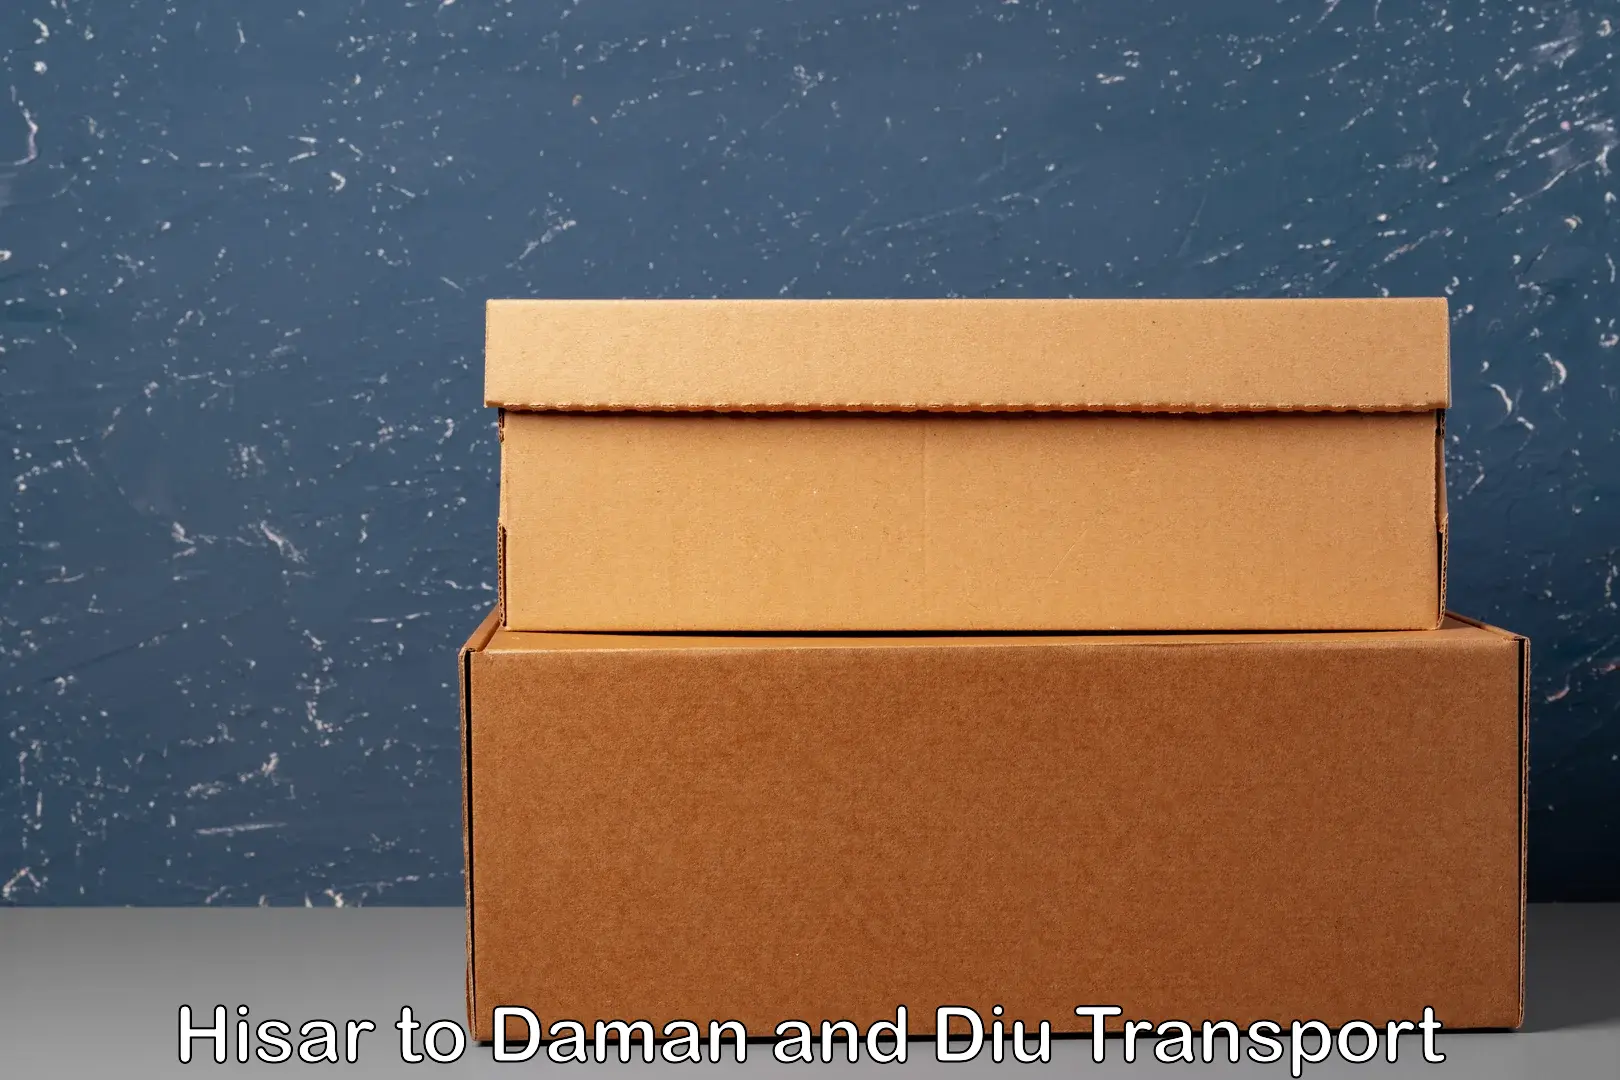 India truck logistics services Hisar to Daman and Diu